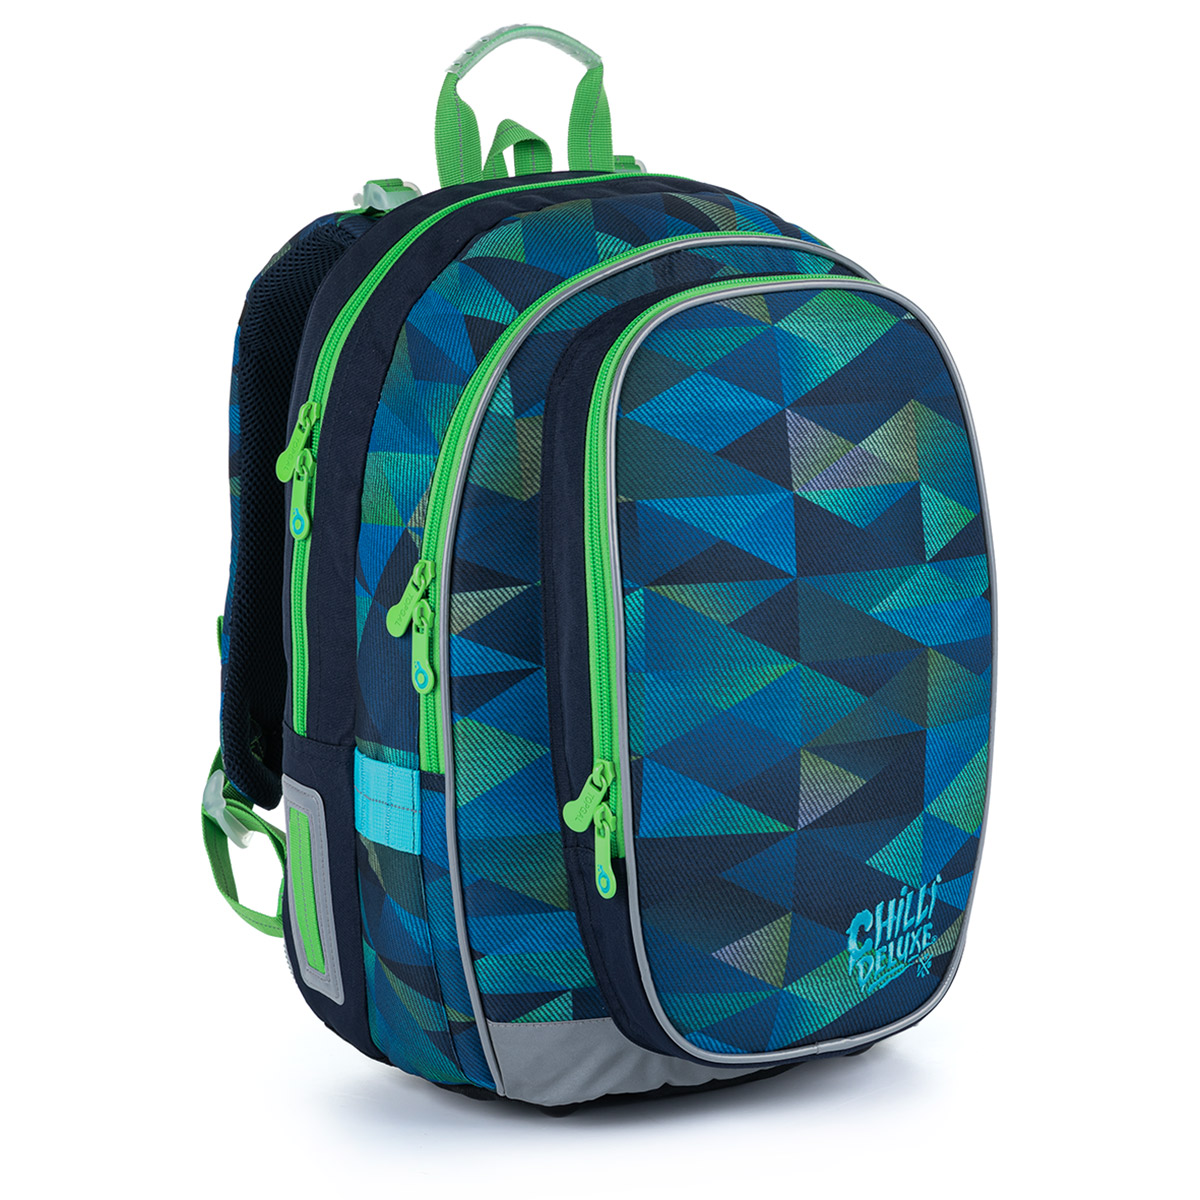 Modrozelený školní batoh TOPGAL MIRA 21019 B